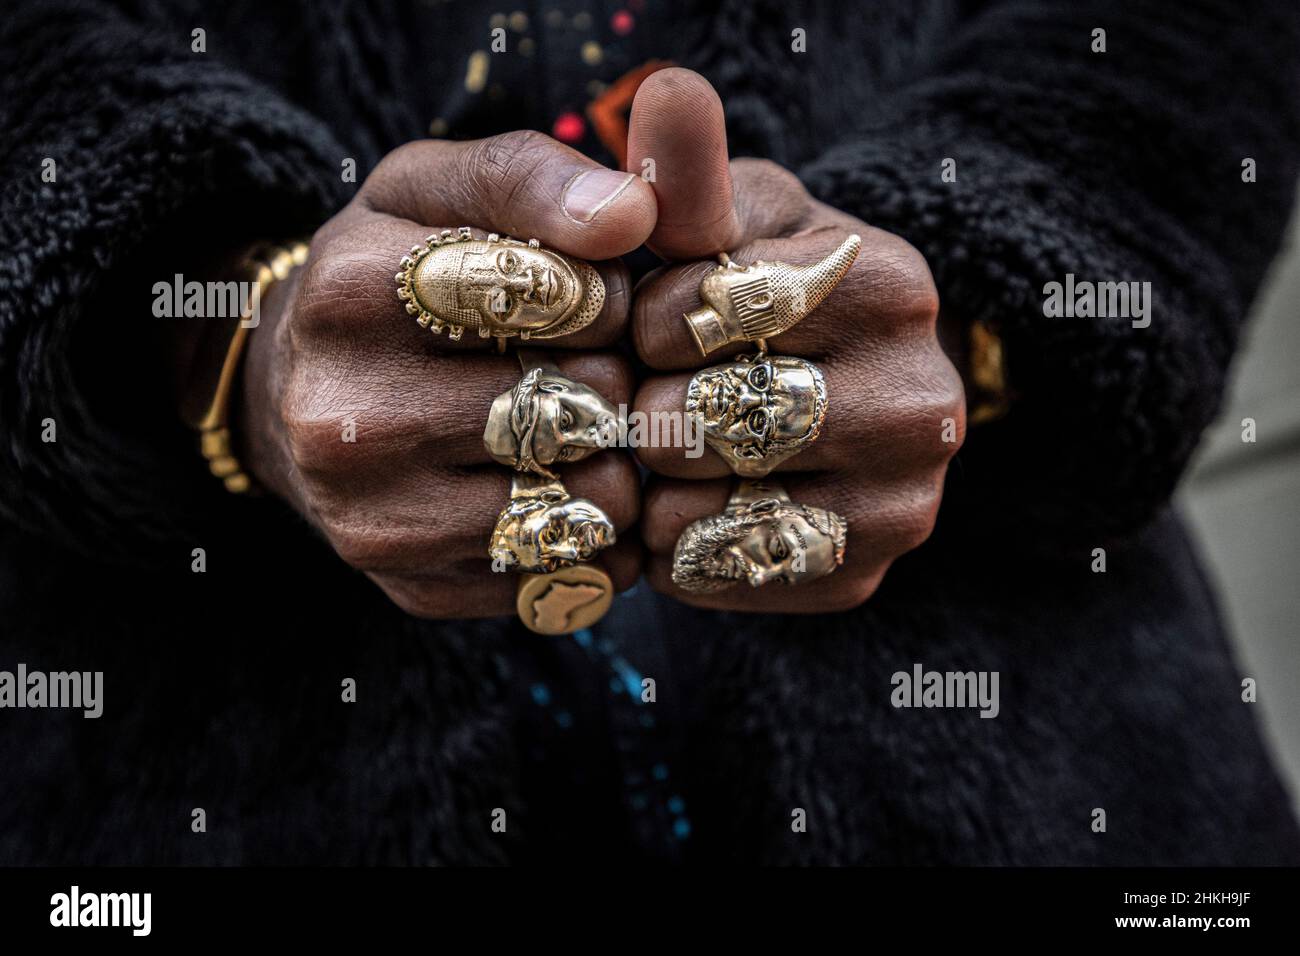 vue rapprochée des anneaux sur la main mâle portant plusieurs anneaux Banque D'Images